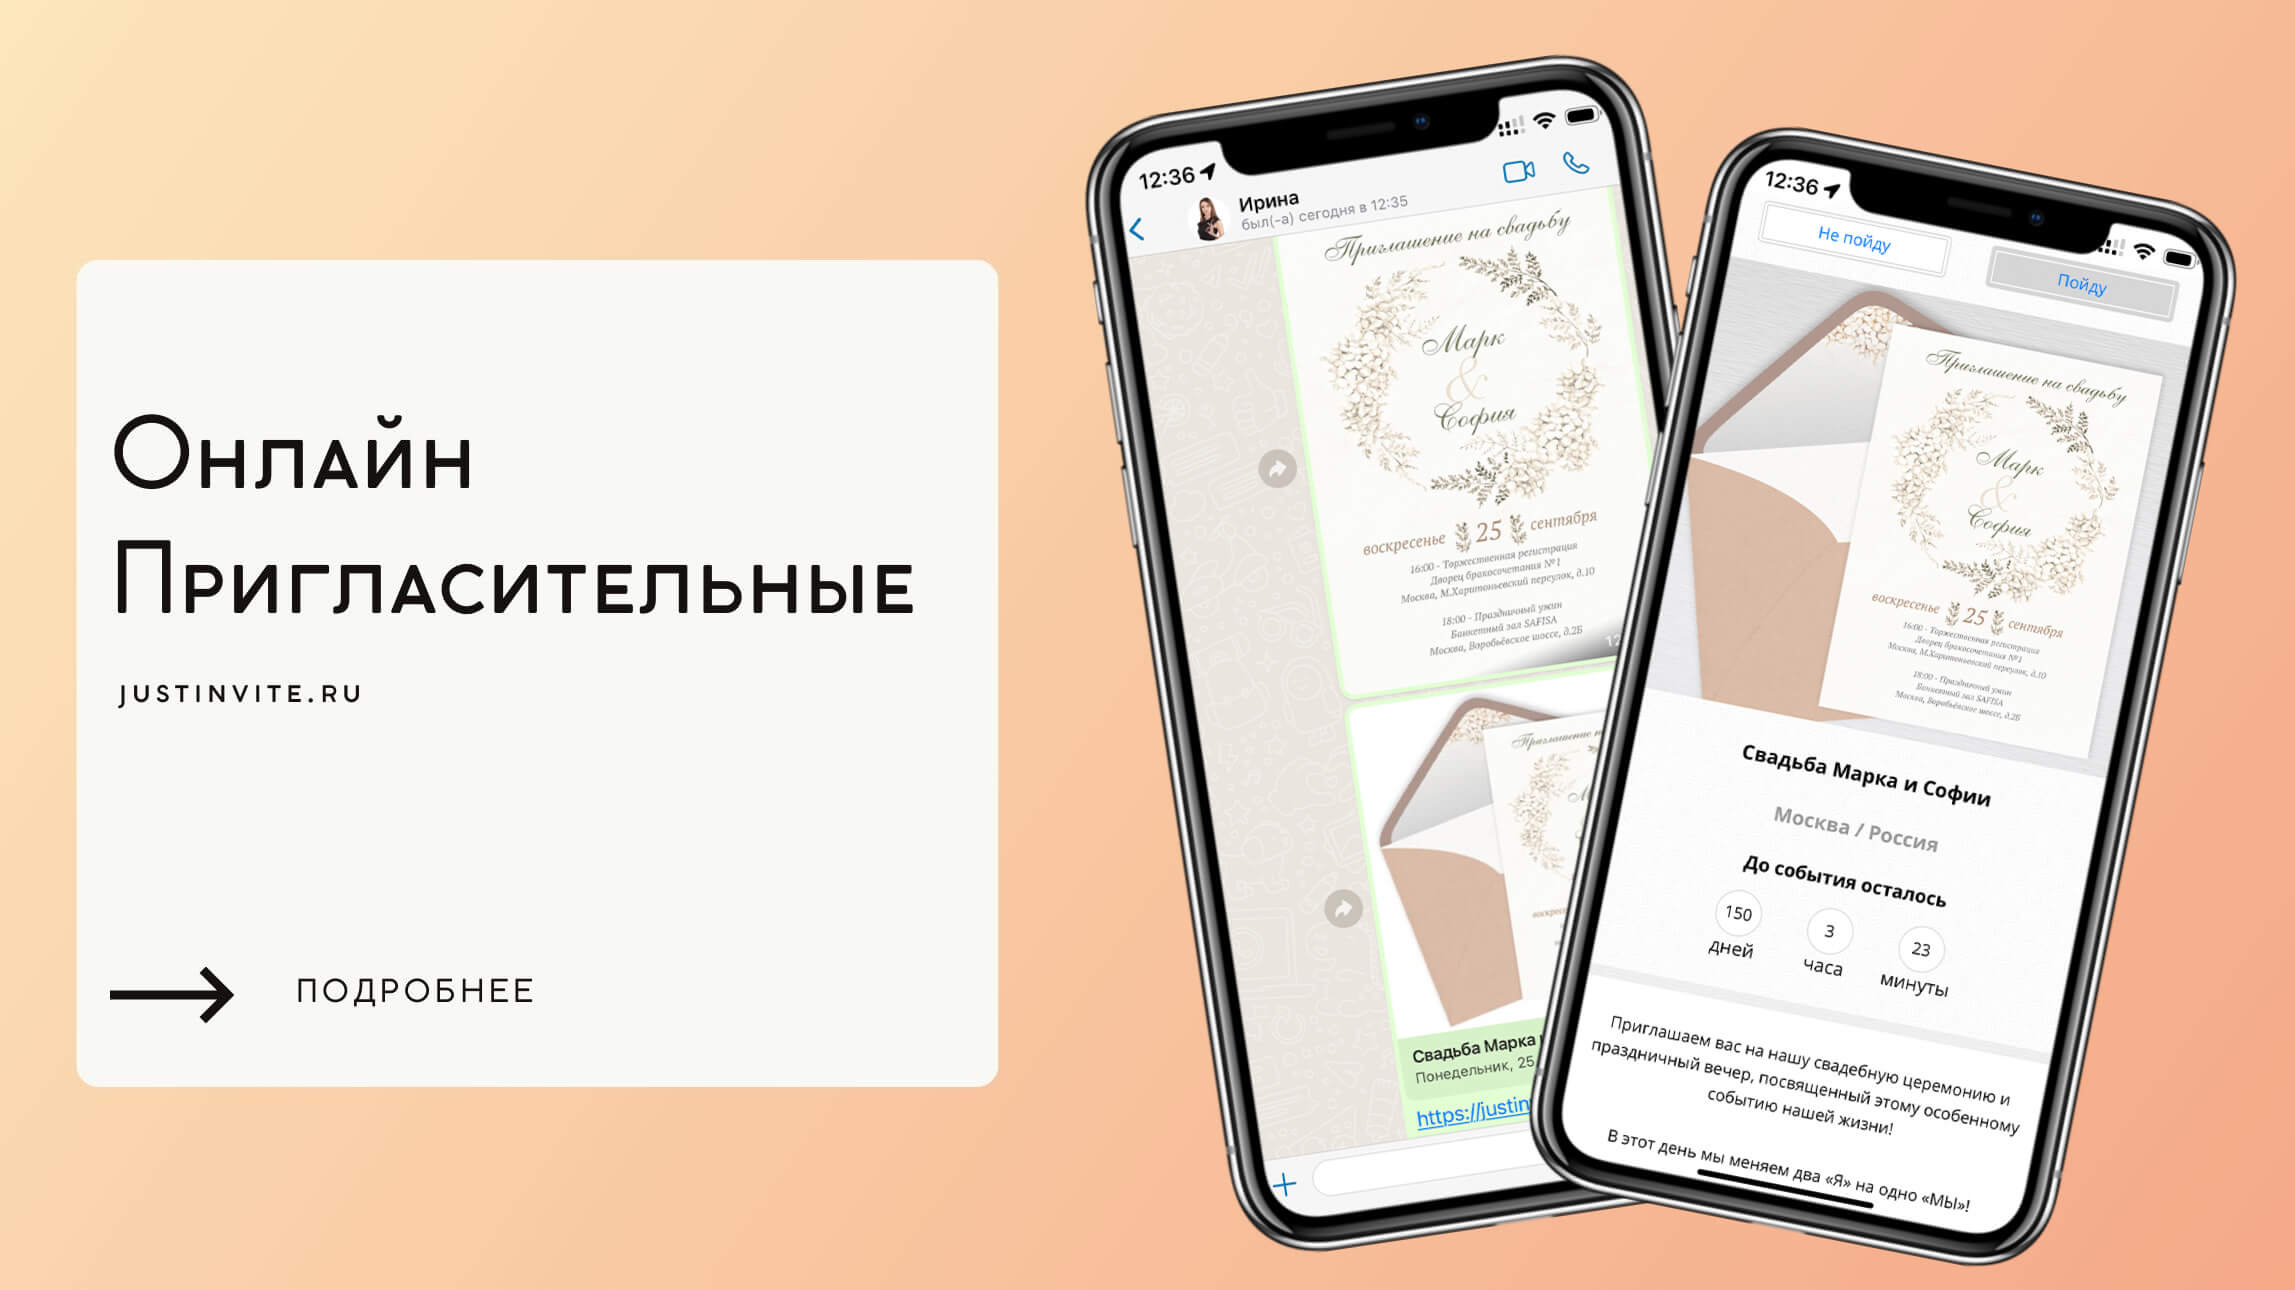 Приглашение на мероприятие: образцы, шаблоны, правила оформления письма | taimyr-expo.ru